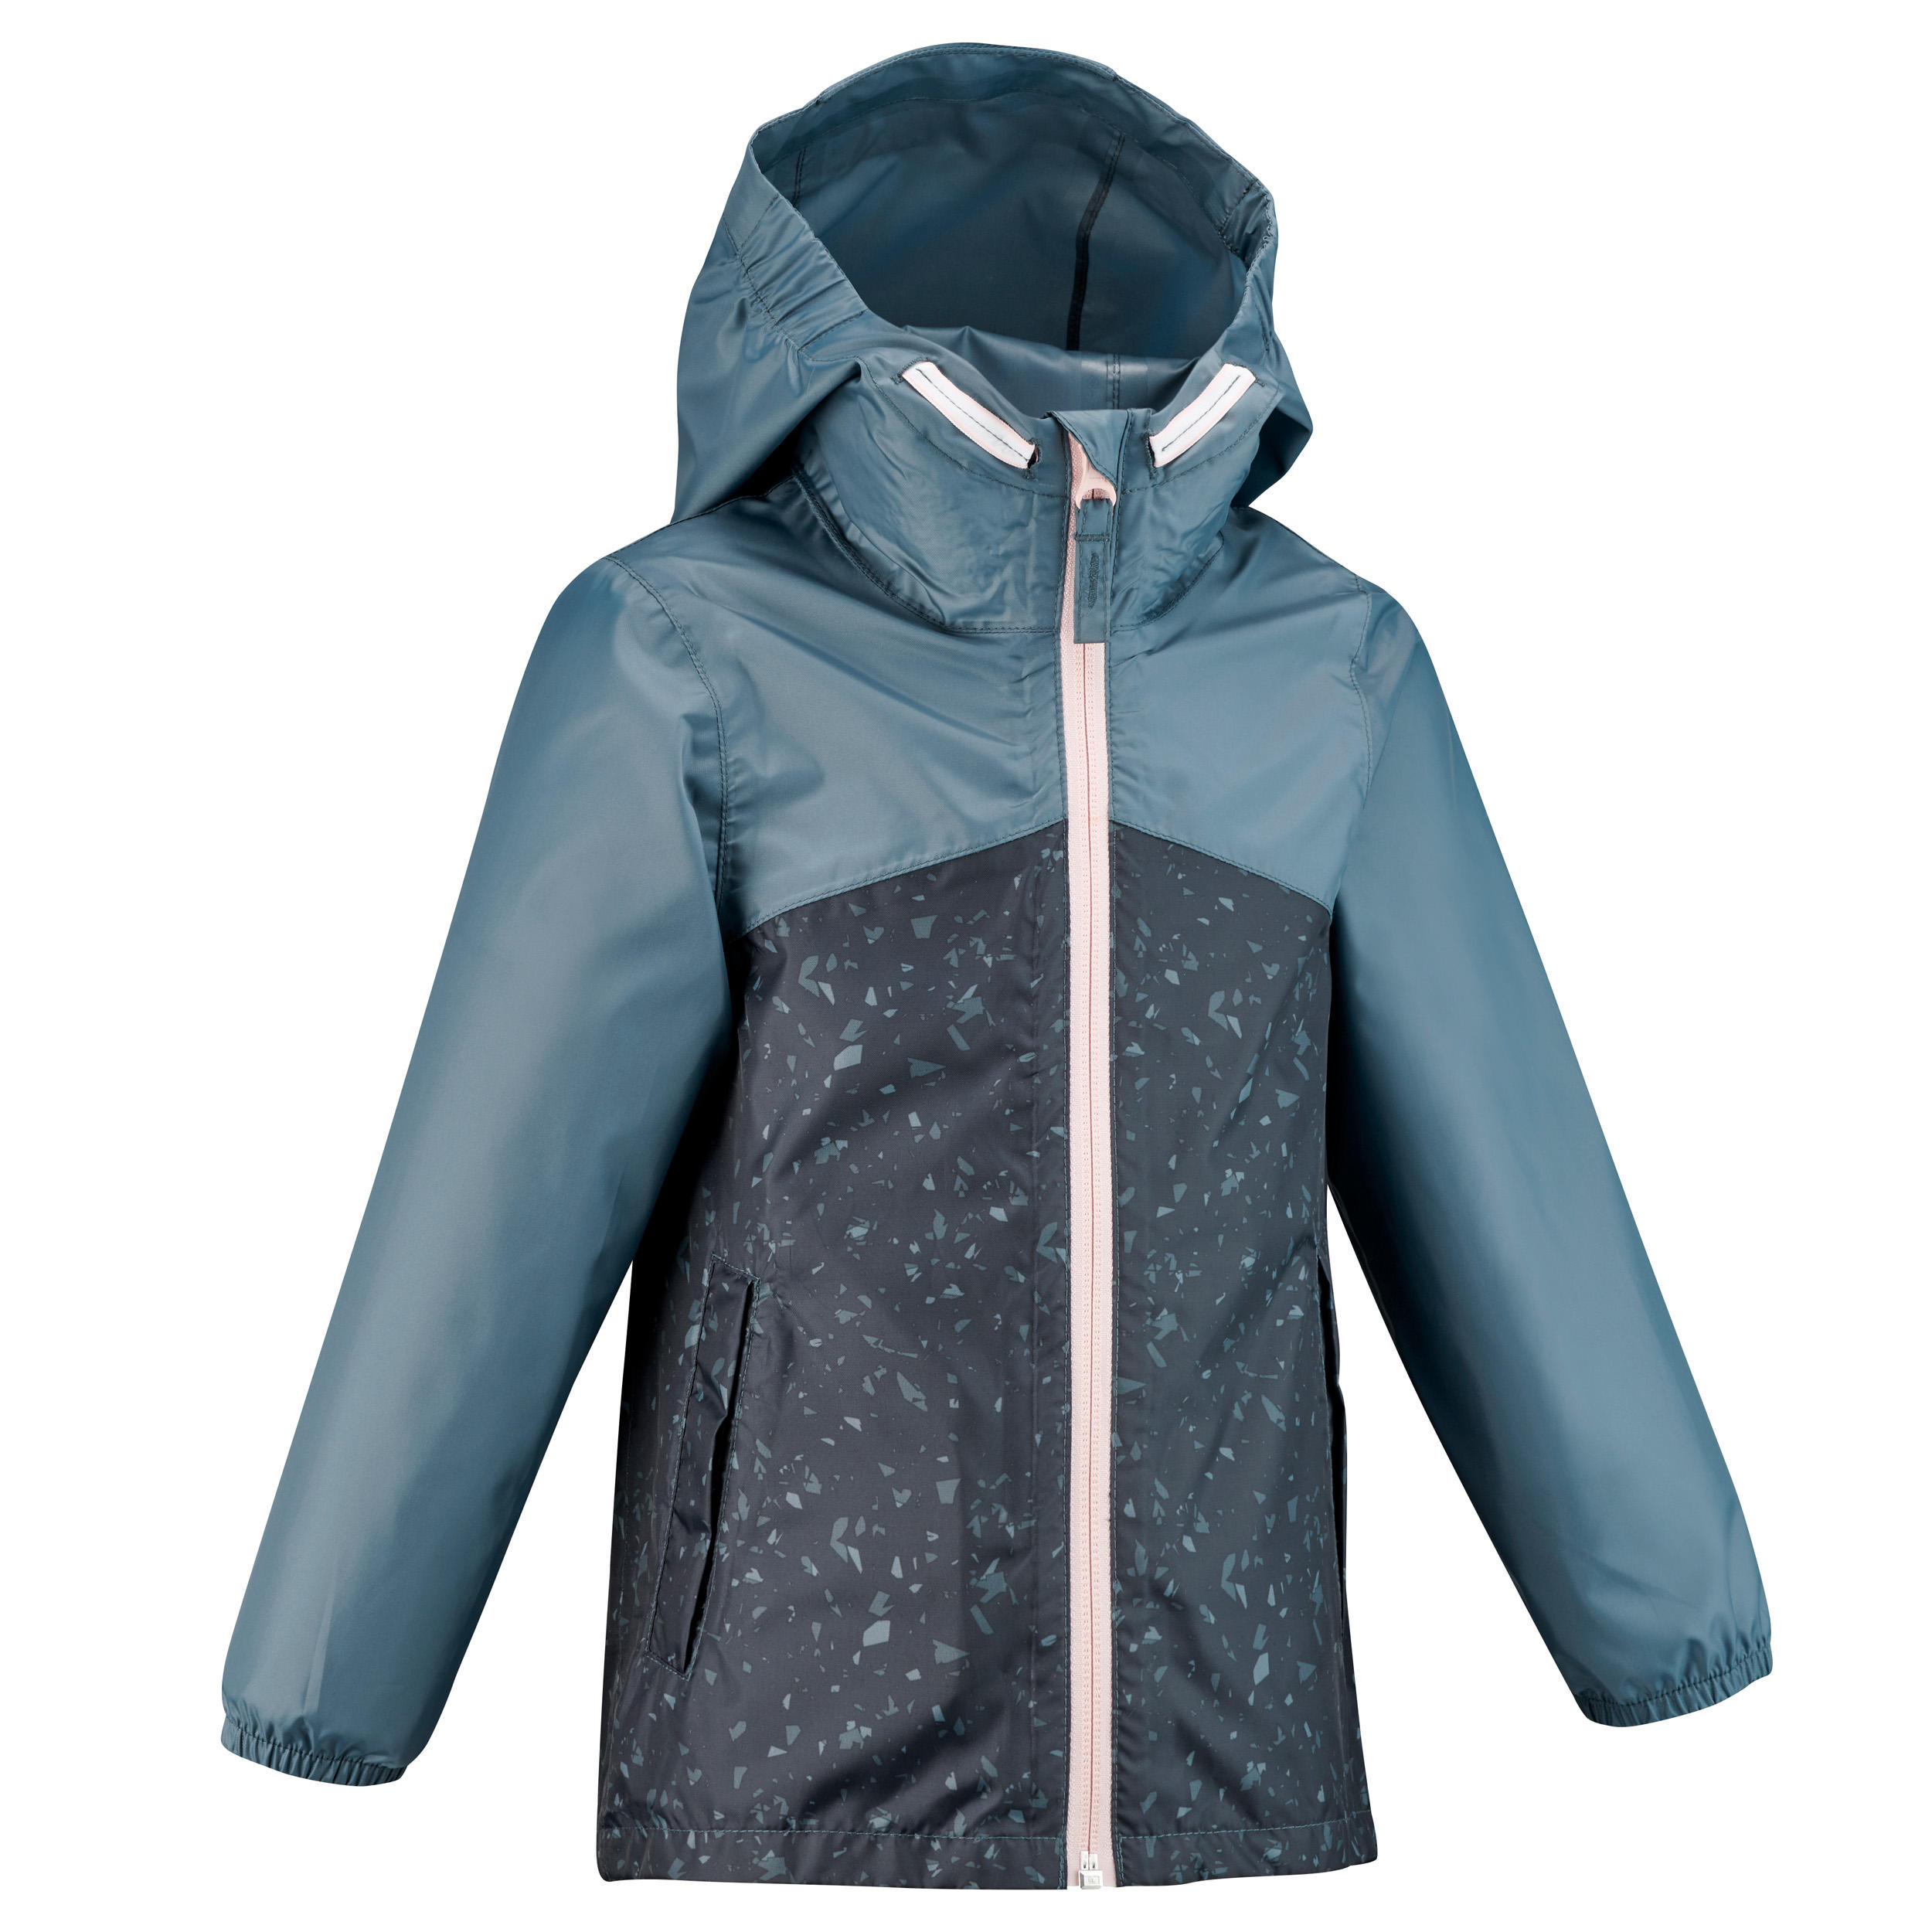 Jachetă Impermeabilă Drumeție la munte MH150 Gri Copii -2-6 ani La Oferta Online decathlon imagine La Oferta Online